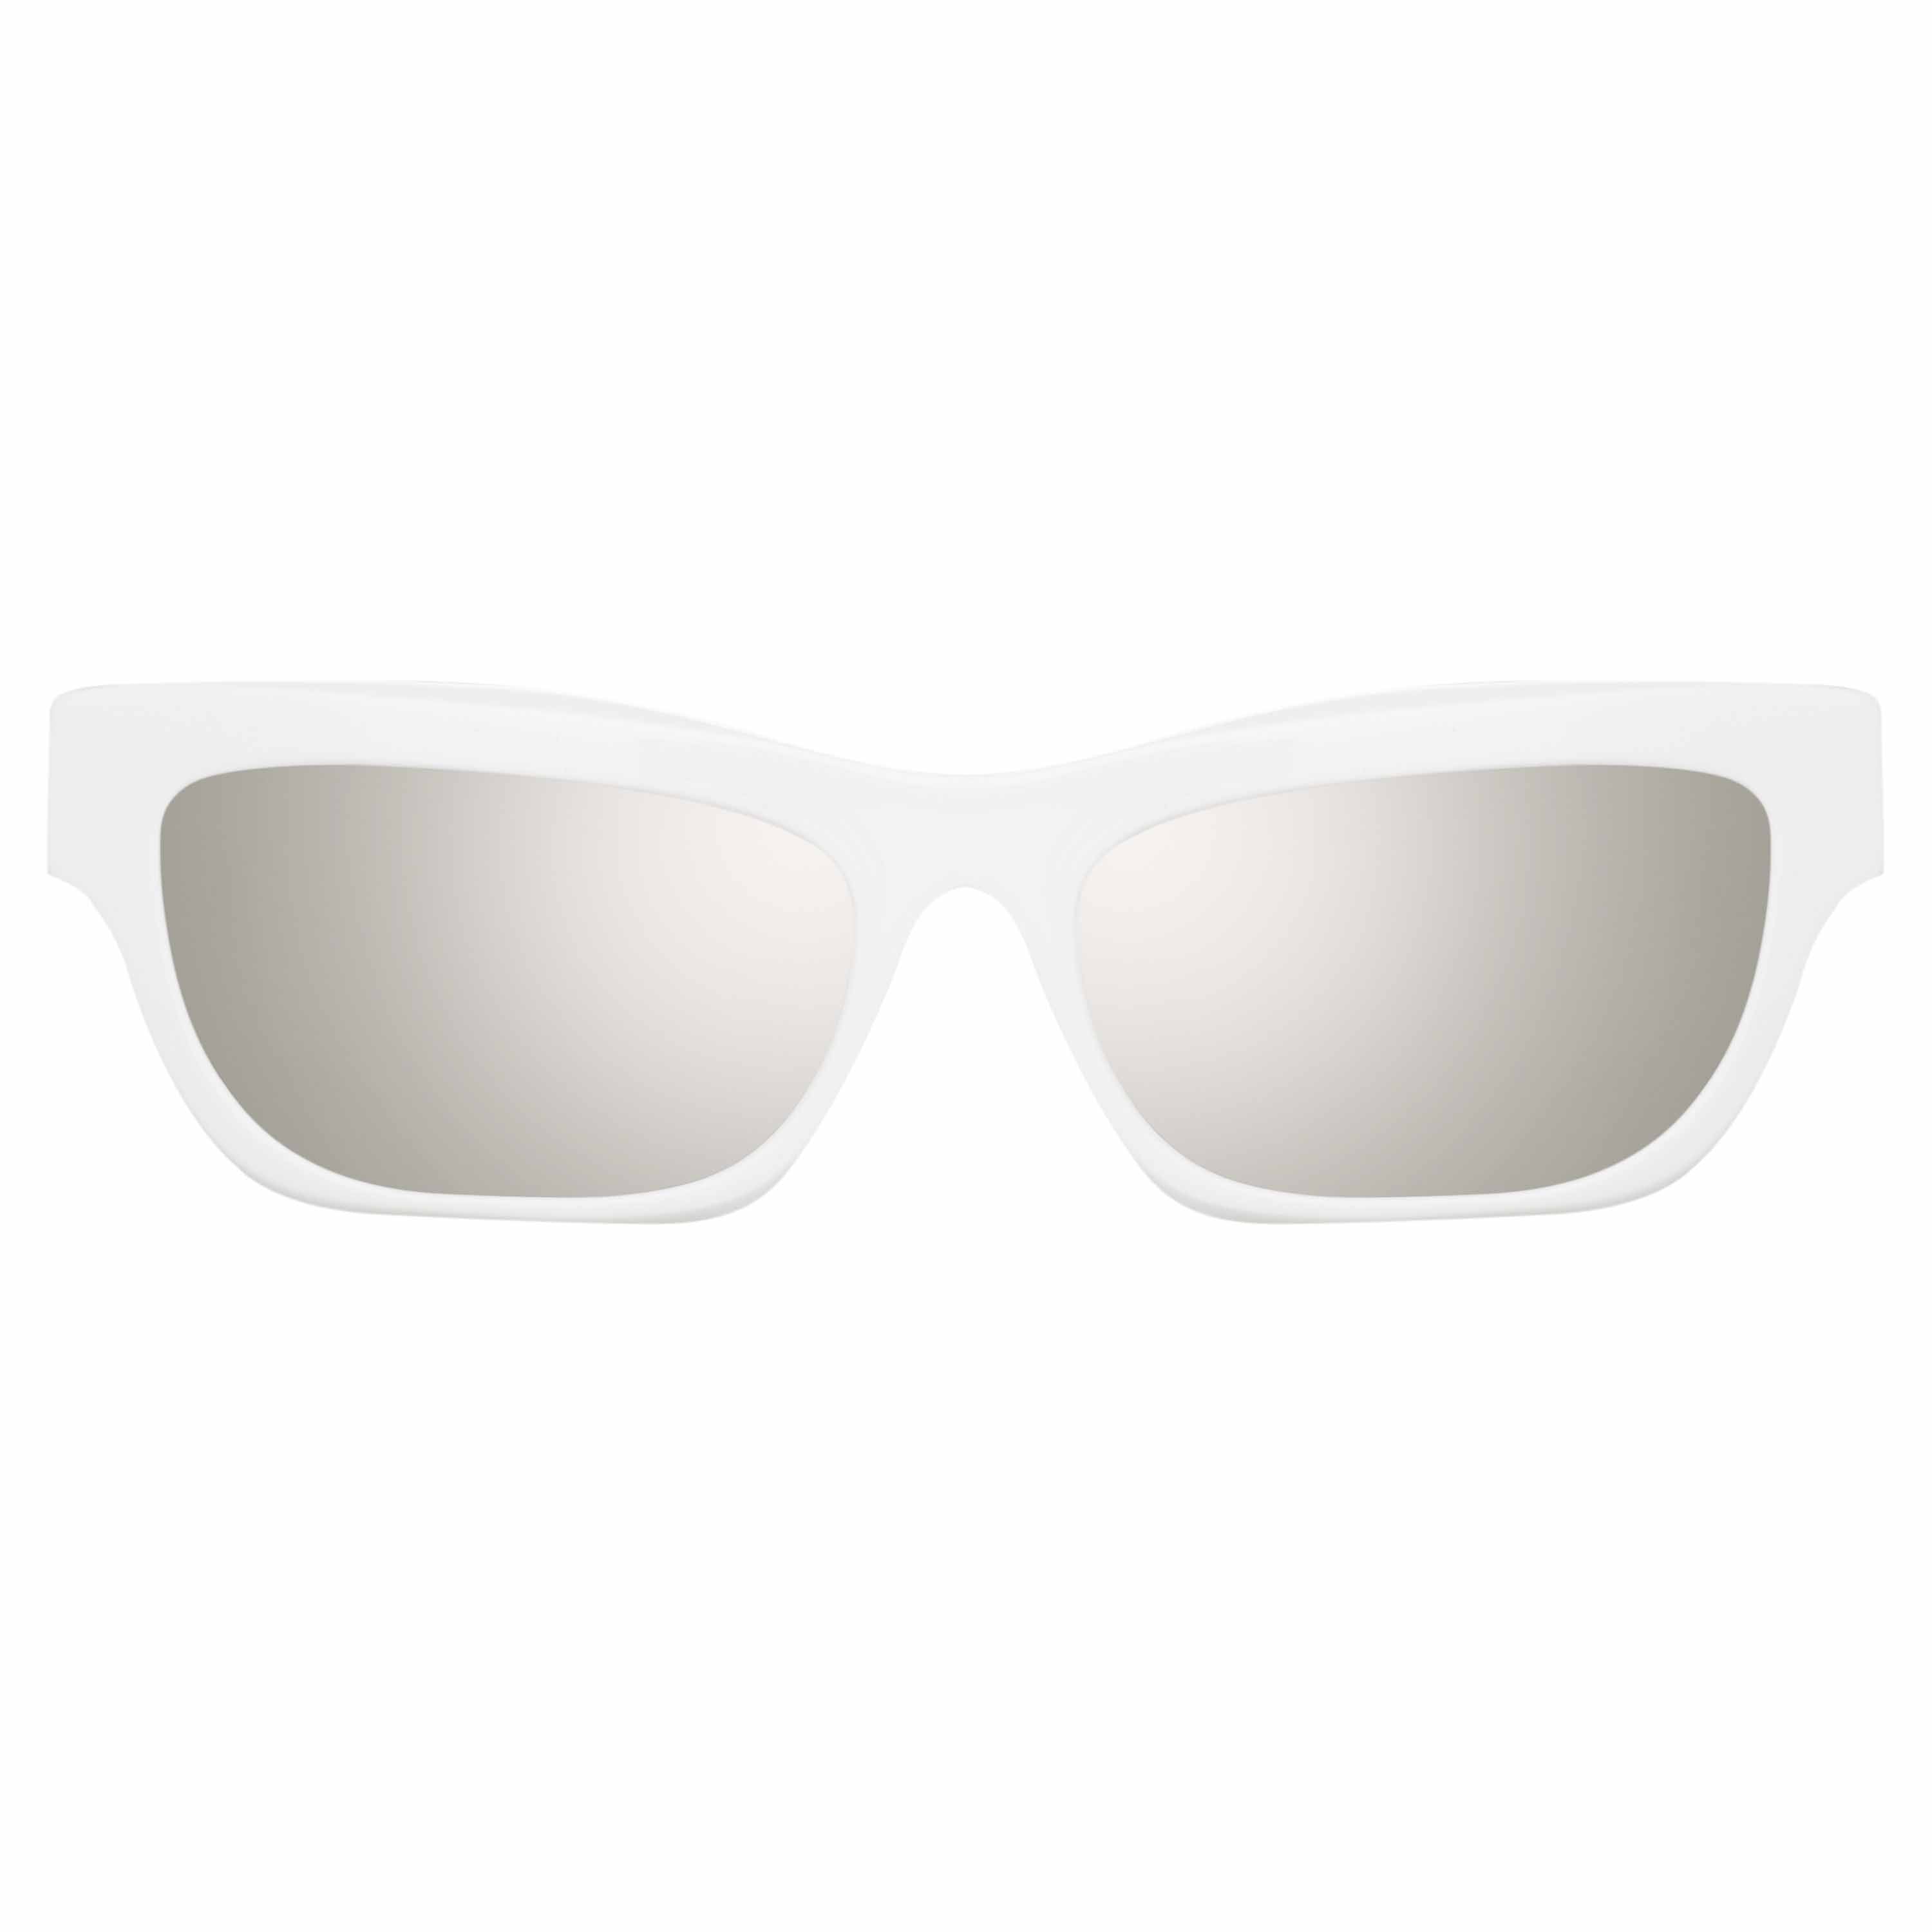 Paco Rabanne Moe Cat Eye Sunglasses in White